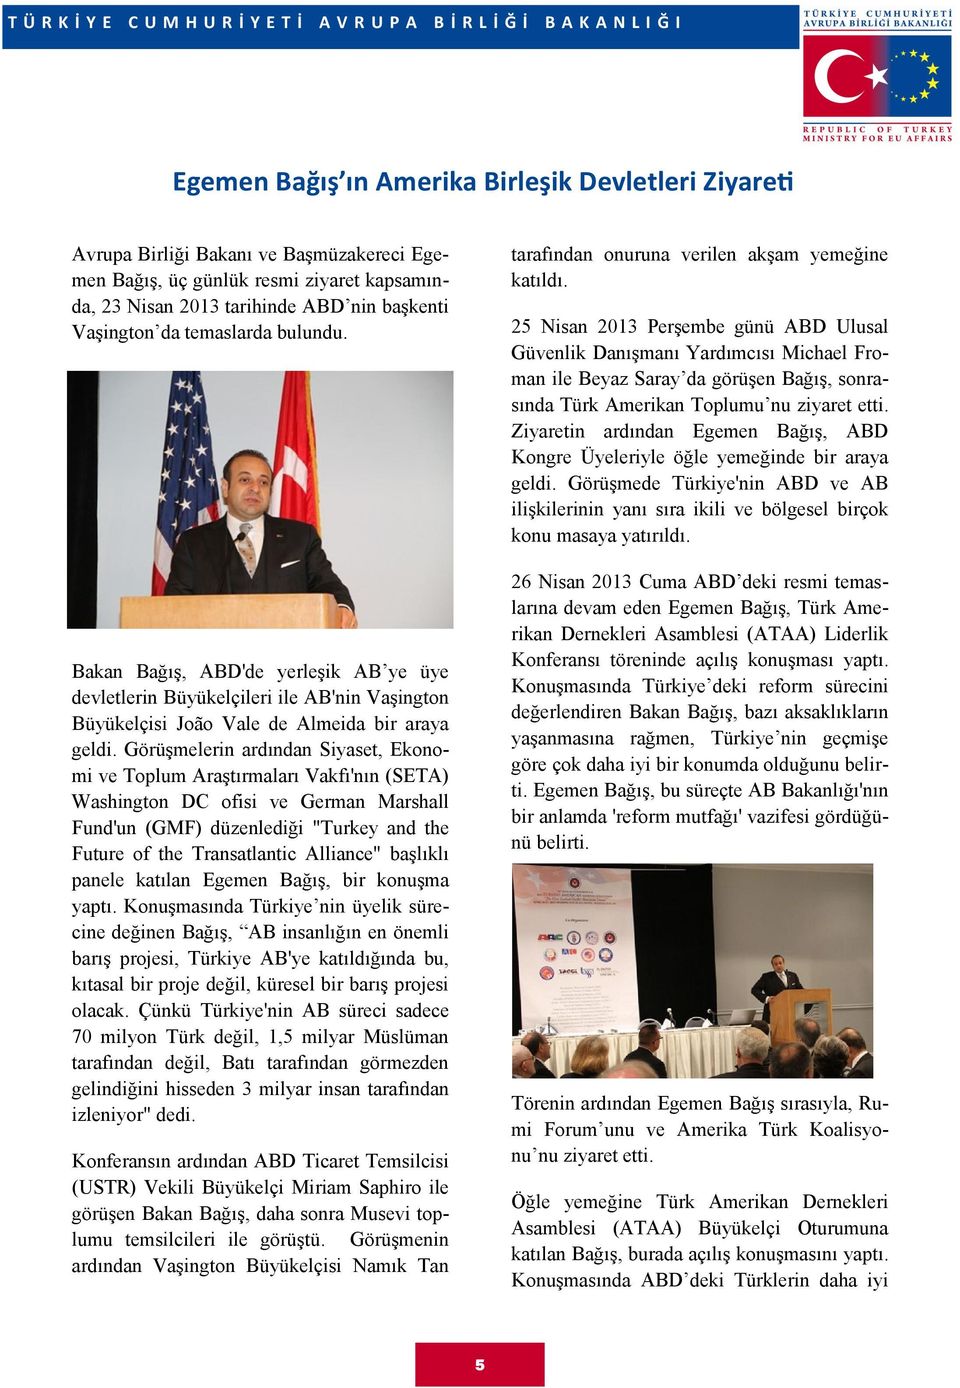 Görüşmelerin ardından Siyaset, Ekonomi ve Toplum Araştırmaları Vakfı'nın (SETA) Washington DC ofisi ve German Marshall Fund'un (GMF) düzenlediği "Turkey and the Future of the Transatlantic Alliance"